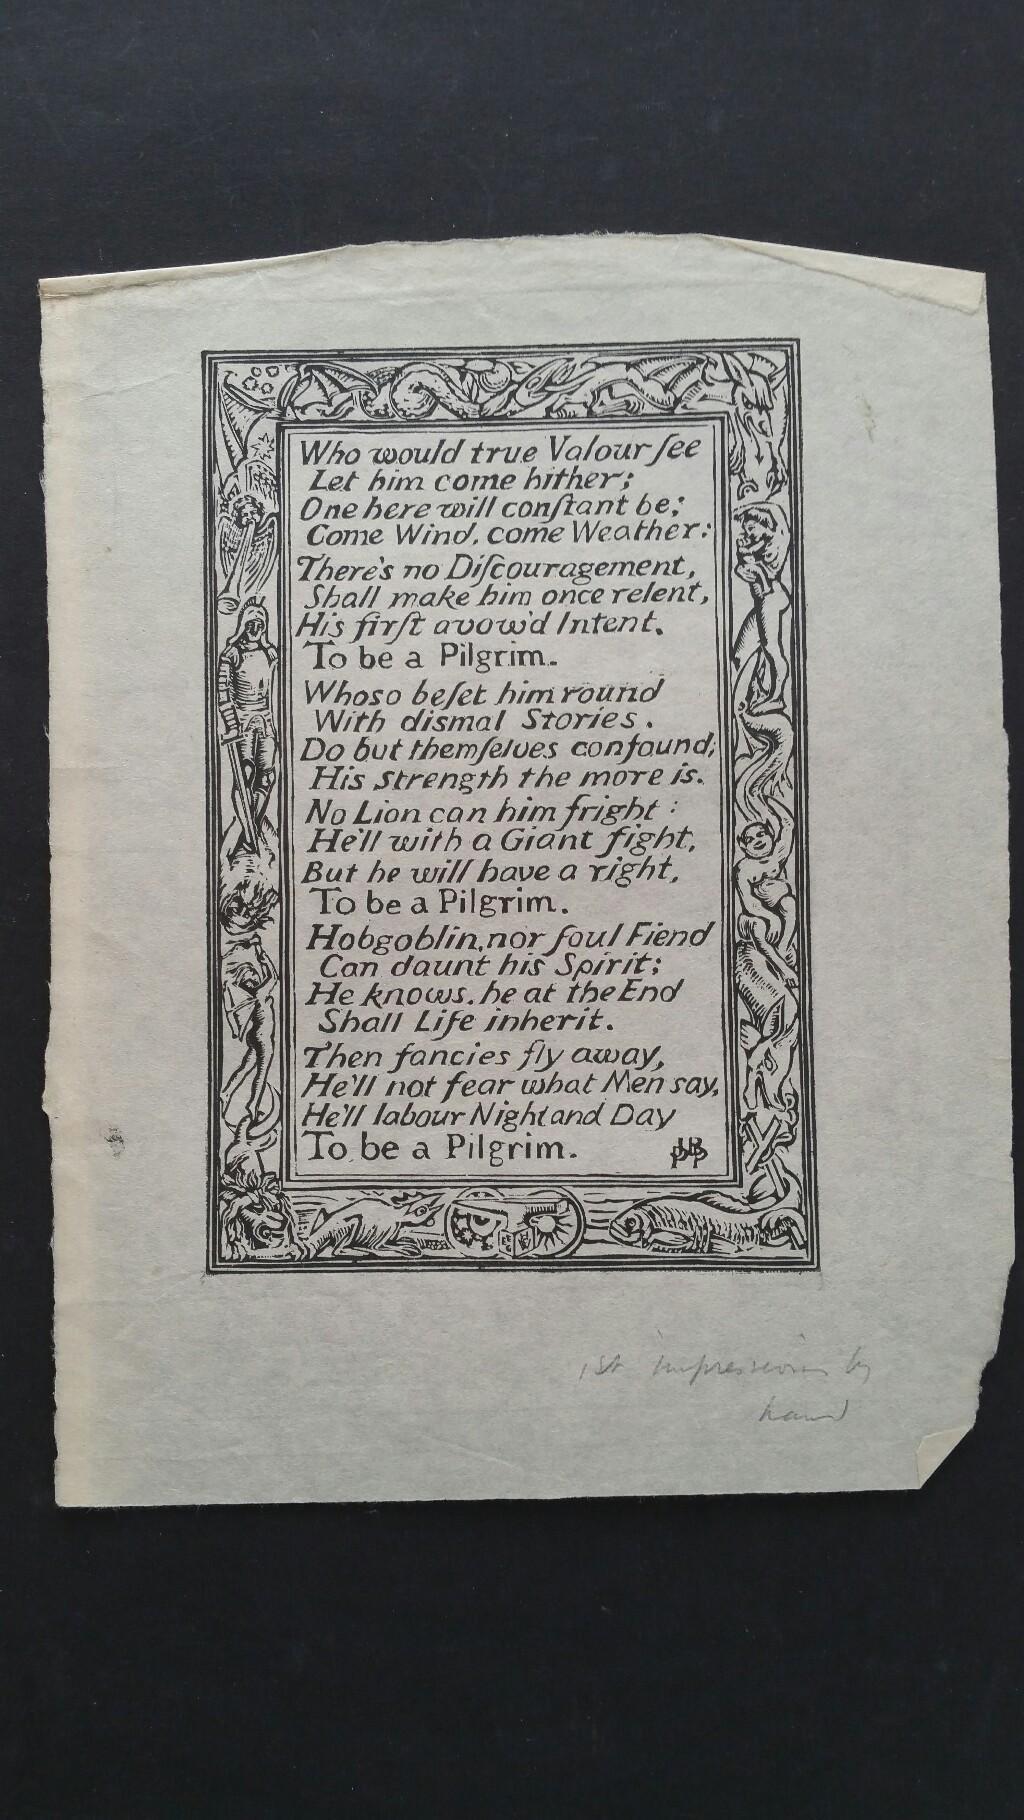 Holzschnitt Kupferstich von John Bunyans Hymne 